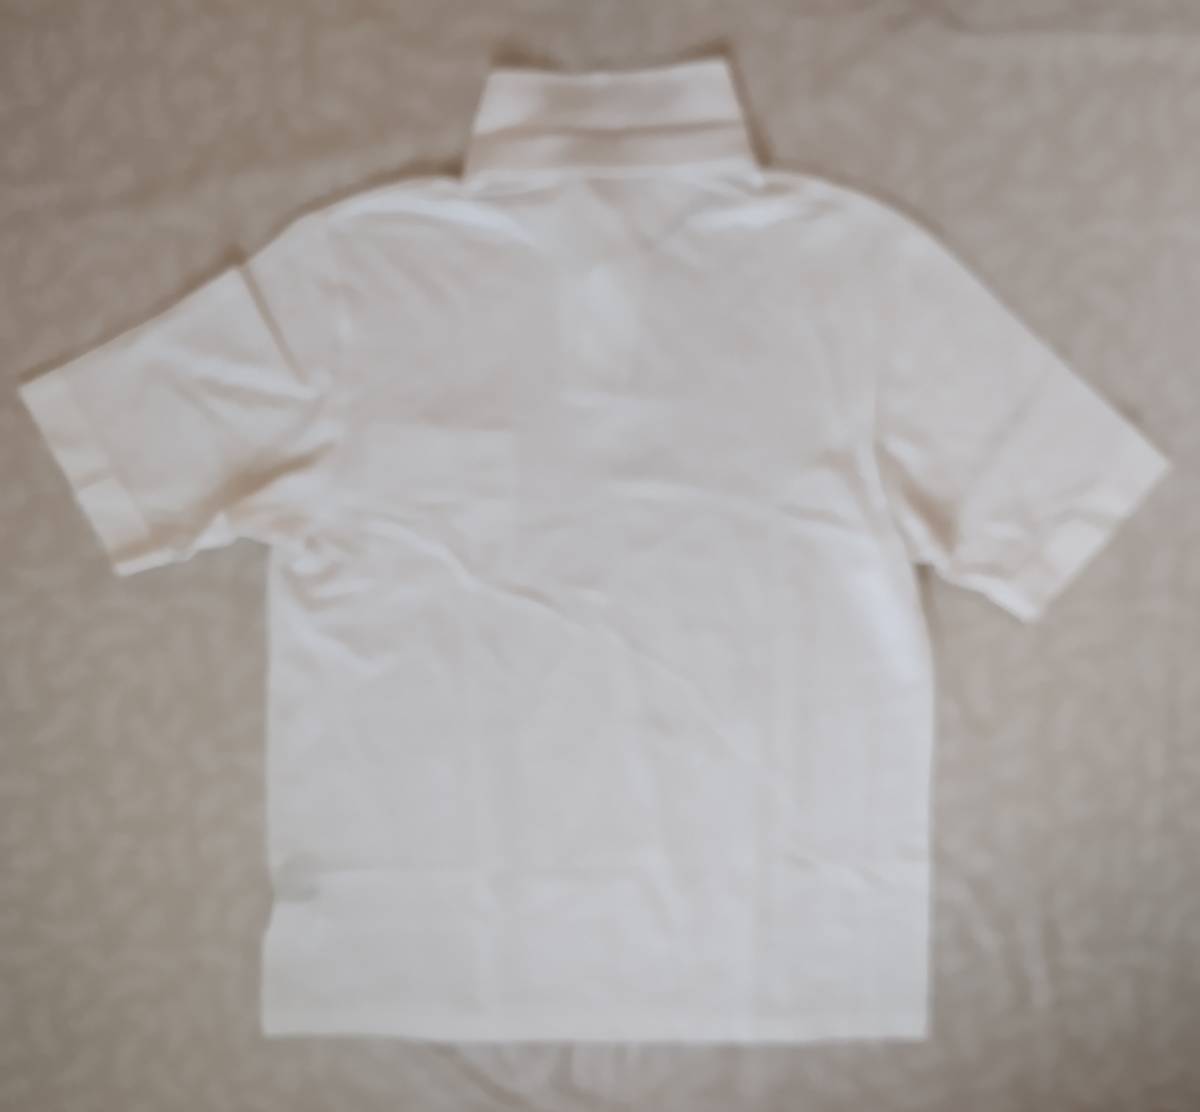  прекрасный товар! Mieko Uesako MU SPORTS рубашка с коротким рукавом размер 50(L соответствует ) белый стрекоза вышивка сделано в Японии мелкий сетка способ dry скорость . тонкий ткань 